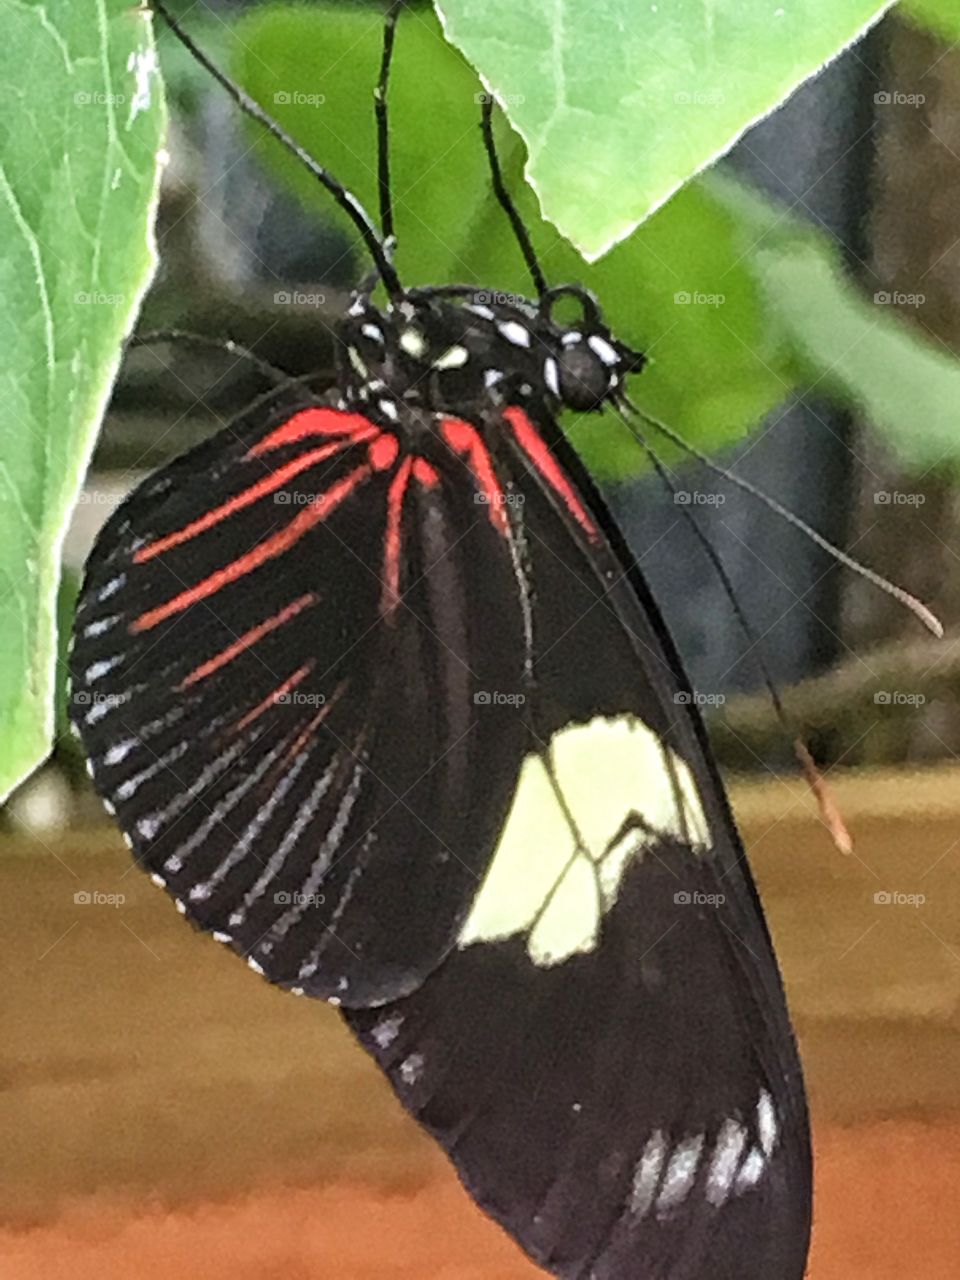 Upside down butterfly 